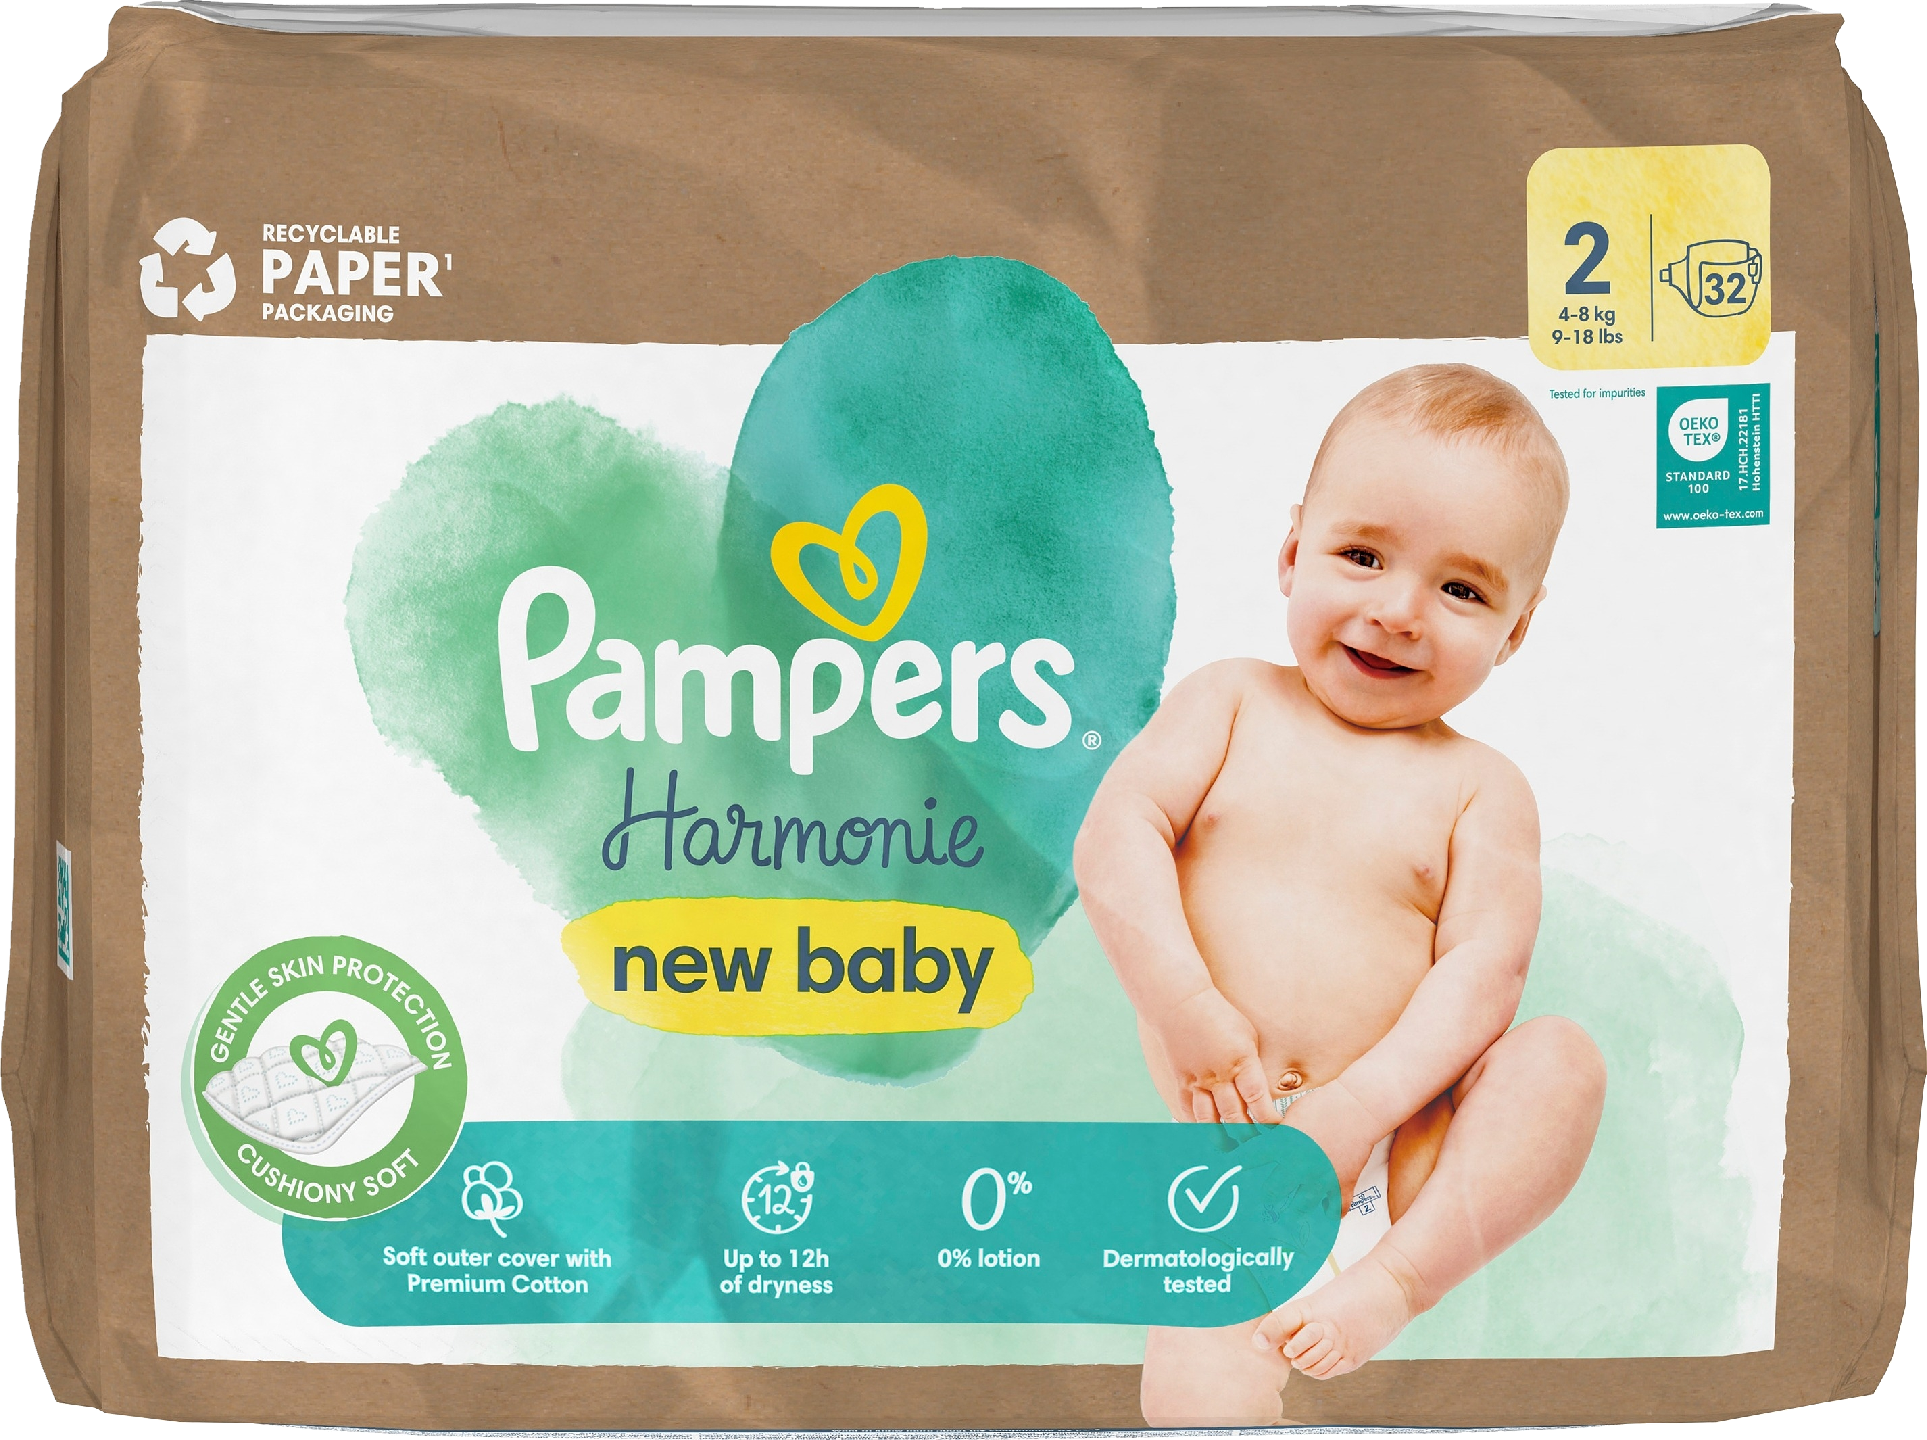 Pampers Harmonie new baby S2 4-8 kg 32 kpl vaippa